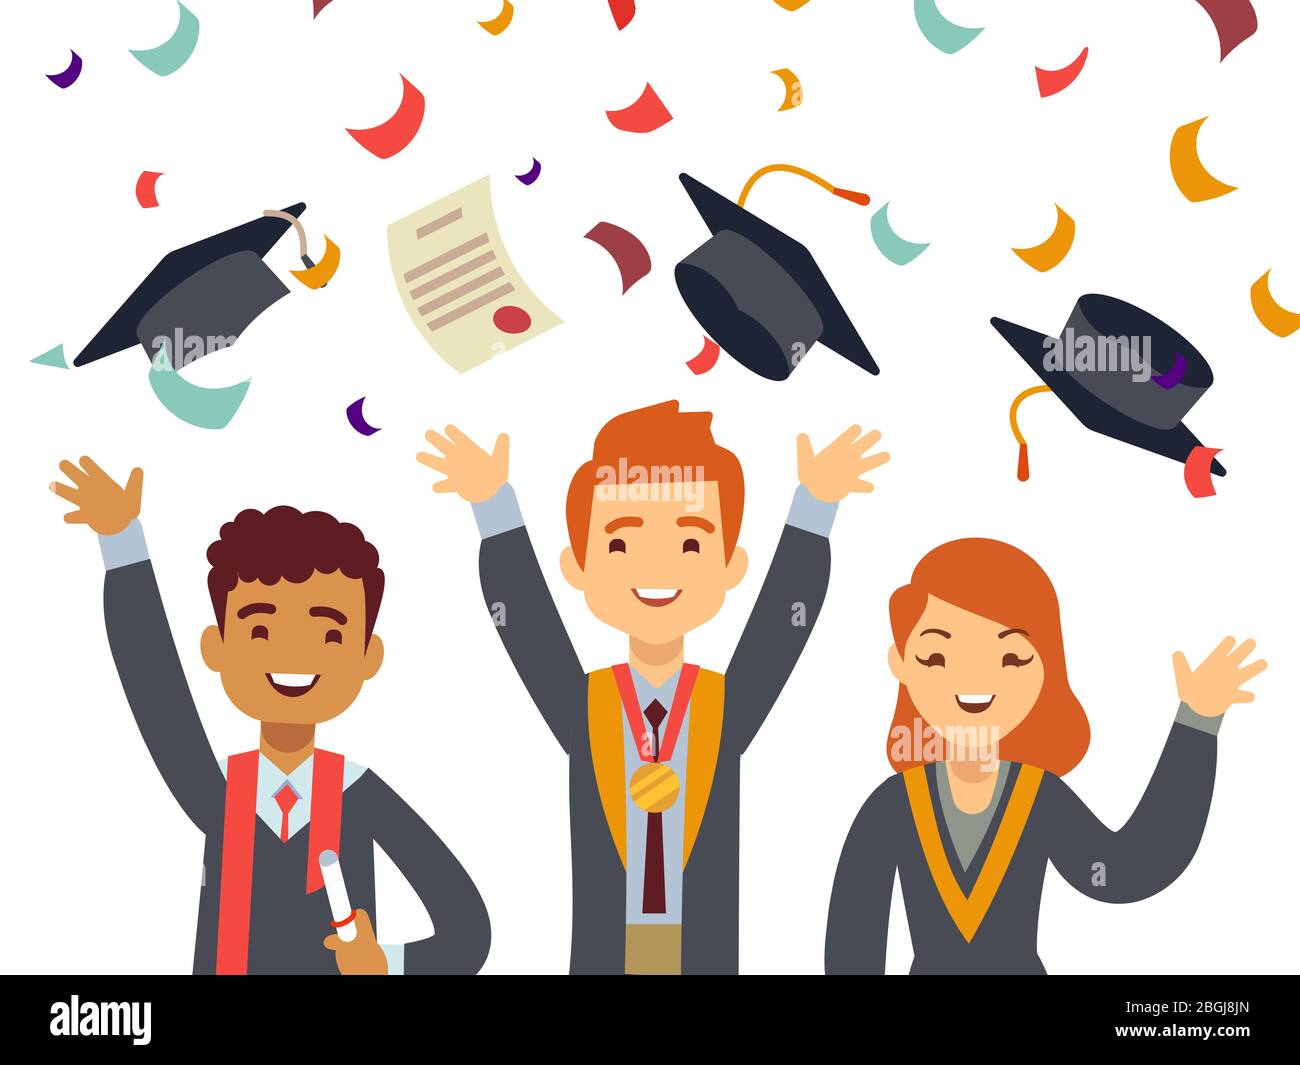 Jeunes diplômés heureux avec des casquettes de deuxième cycle et des  confettis de chute. La cérémonie de réussite scolaire termine l'éducation.  Illustration vectorielle Image Vectorielle Stock - Alamy